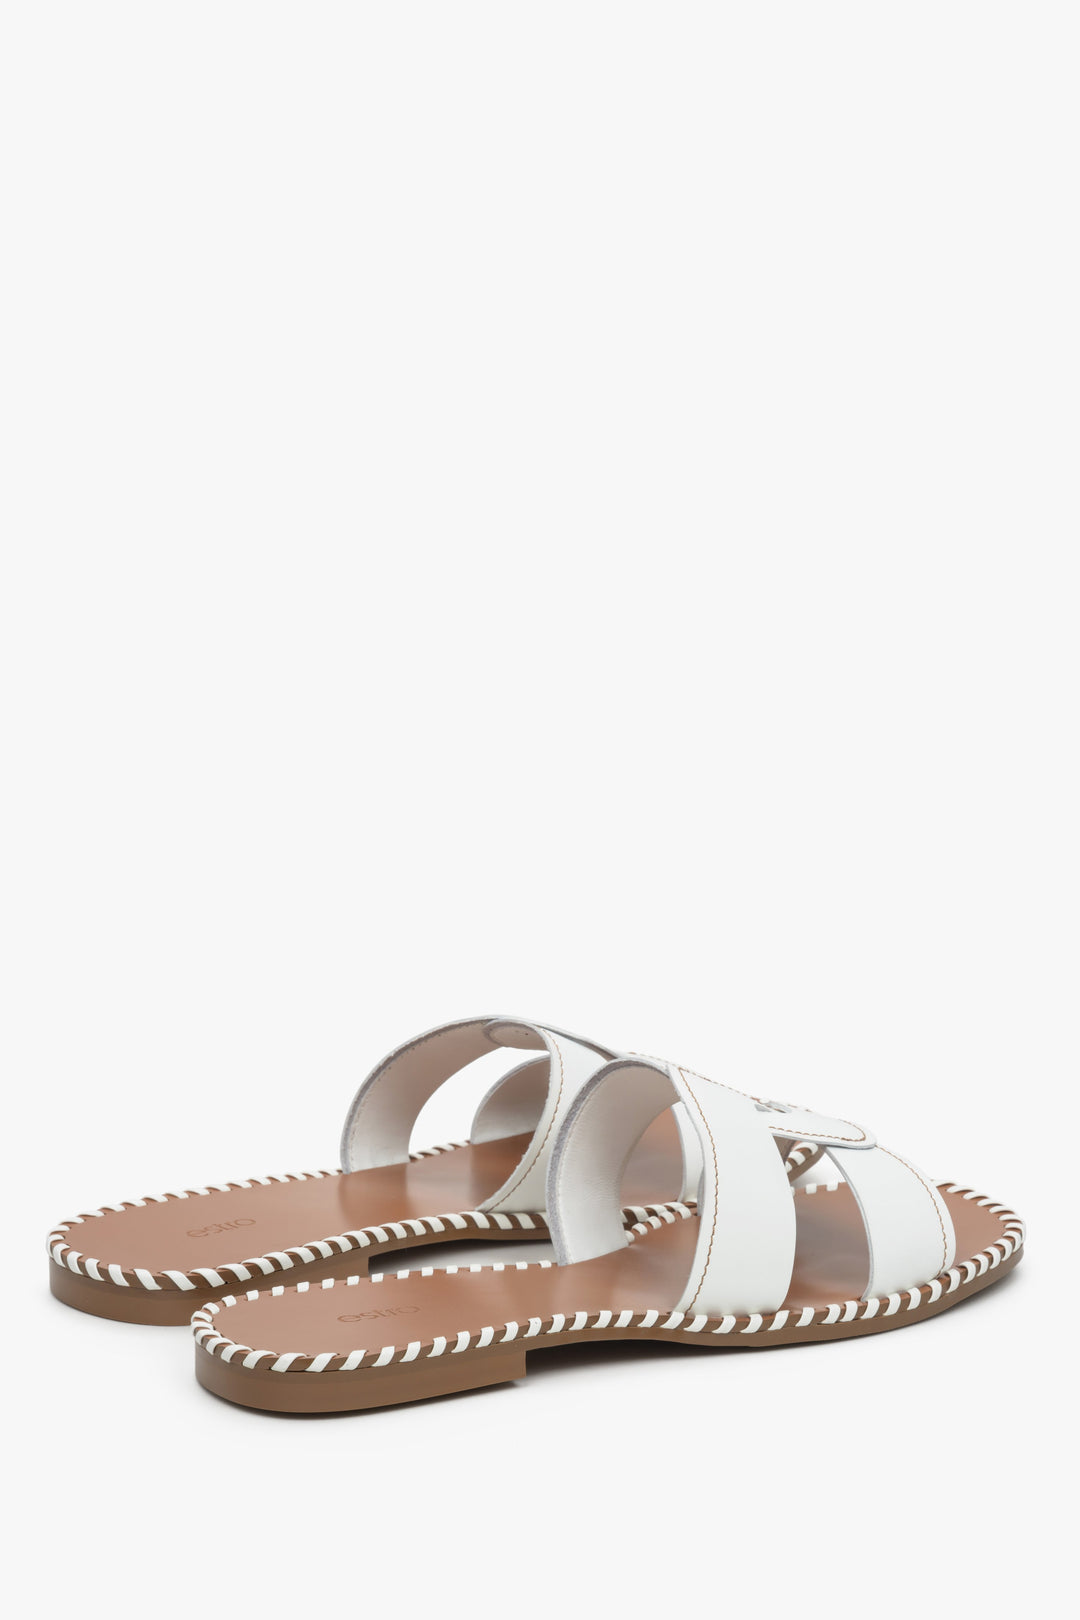 Women's white leather slide sandals.